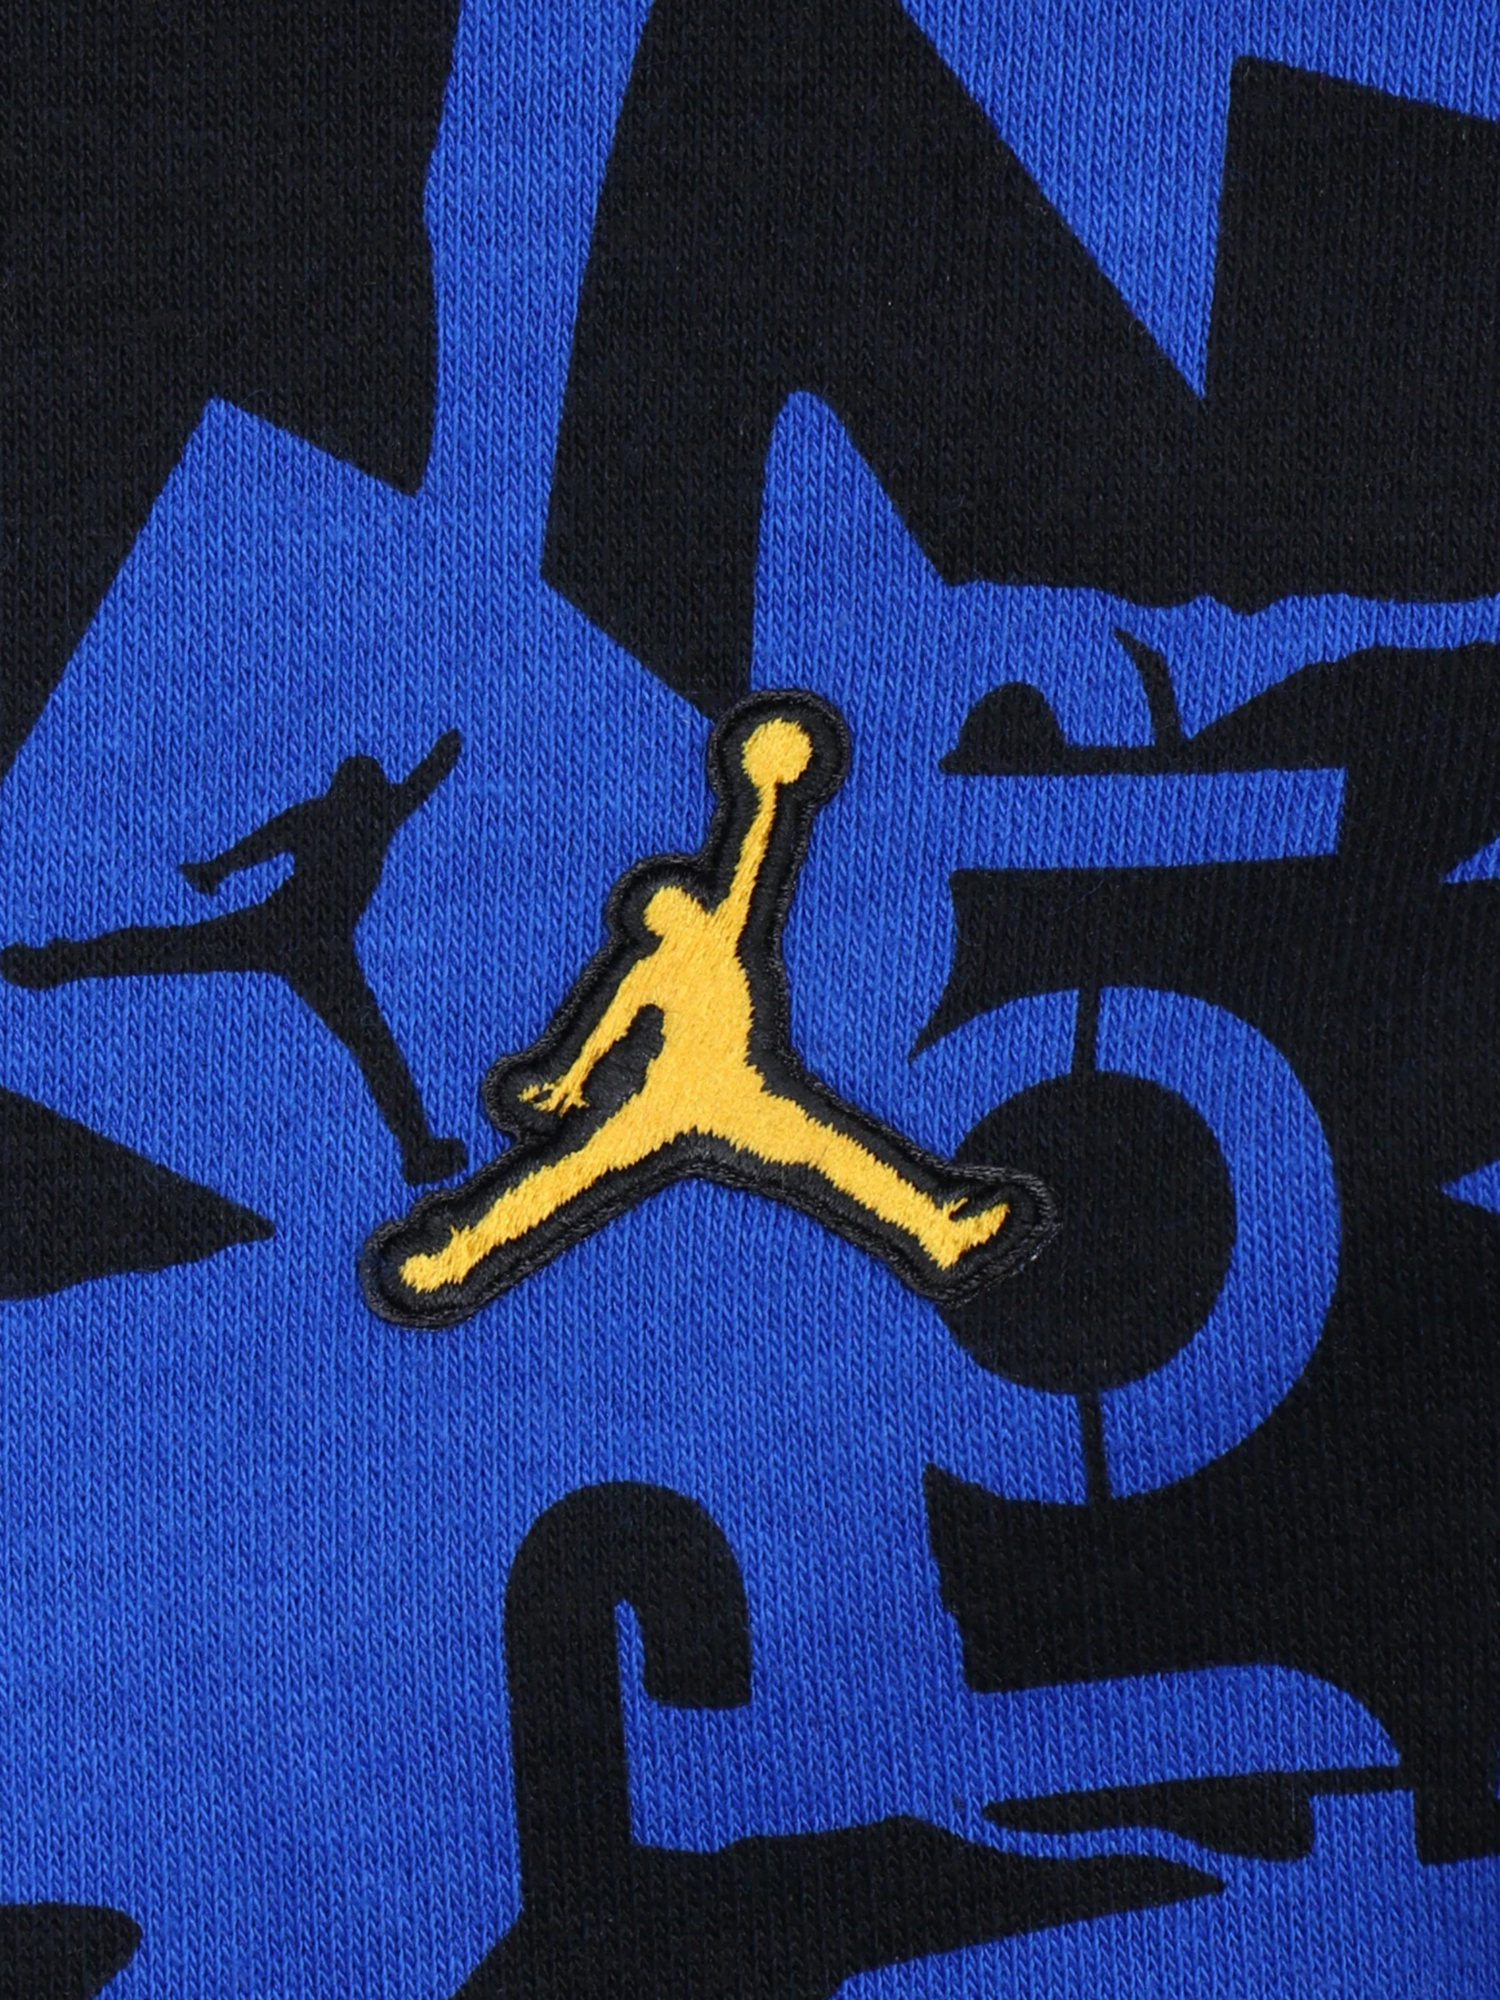 取寄用品 【NIKE】Jordan ロゴ essential レギンス (Nike/スパッツ・レギンス) 82807477 3b0aa1c4  楽天市場店 -www.jarsrl.com